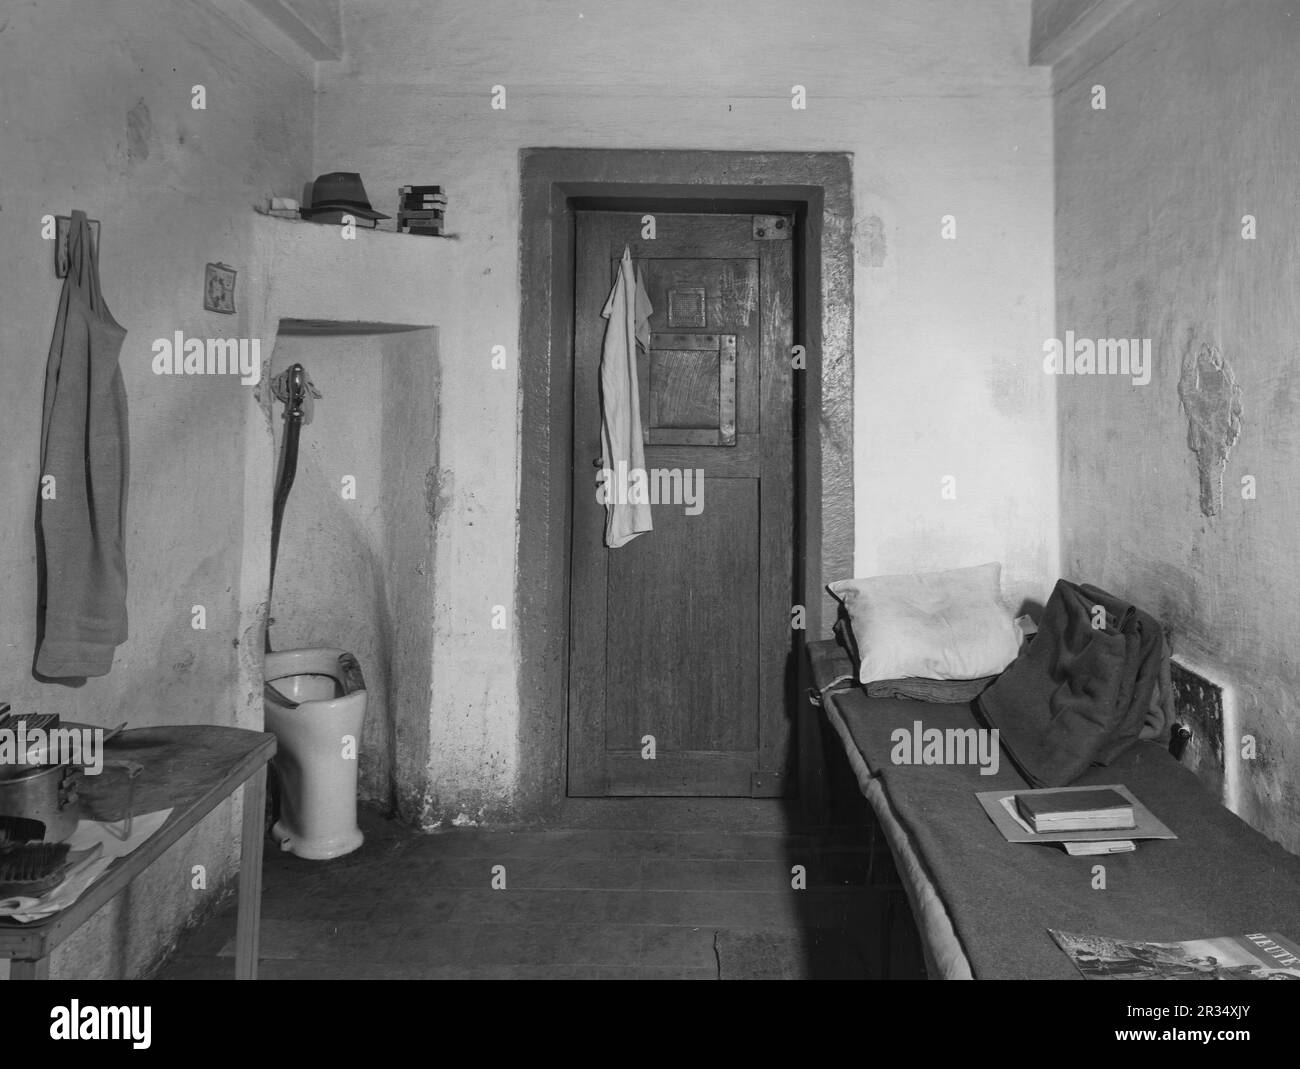 Une cellule dans la prison du palais de justice de Nuremberg où les criminels de guerre nazis ont été emprisonnés en 1945, lors des célèbres procès de Nuremberg. Banque D'Images